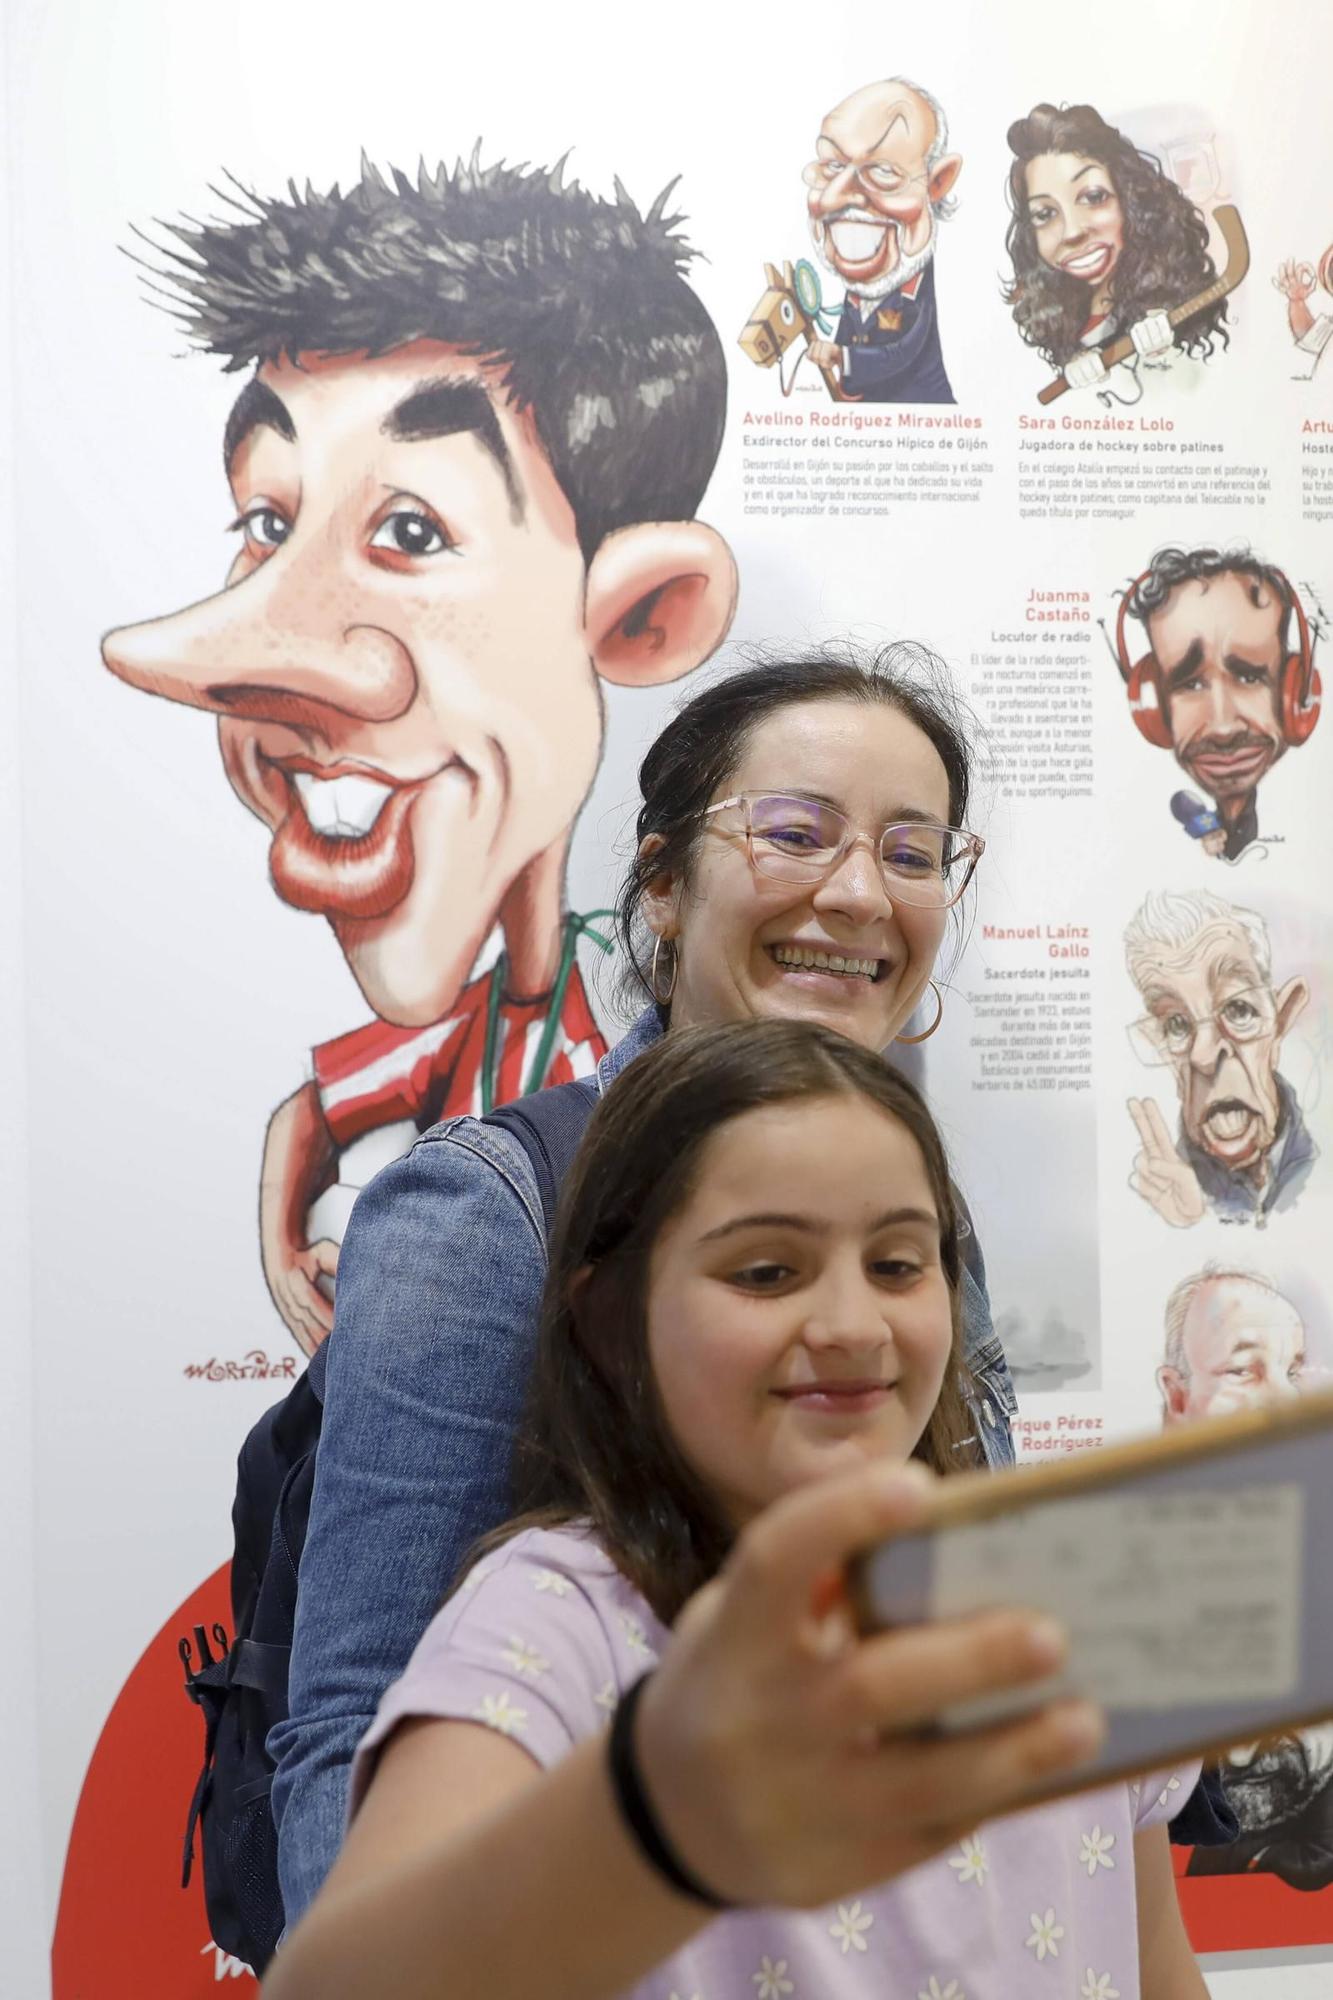 La ciudad aplaude la exposición "Personajes de Gijón" (en imágenes)